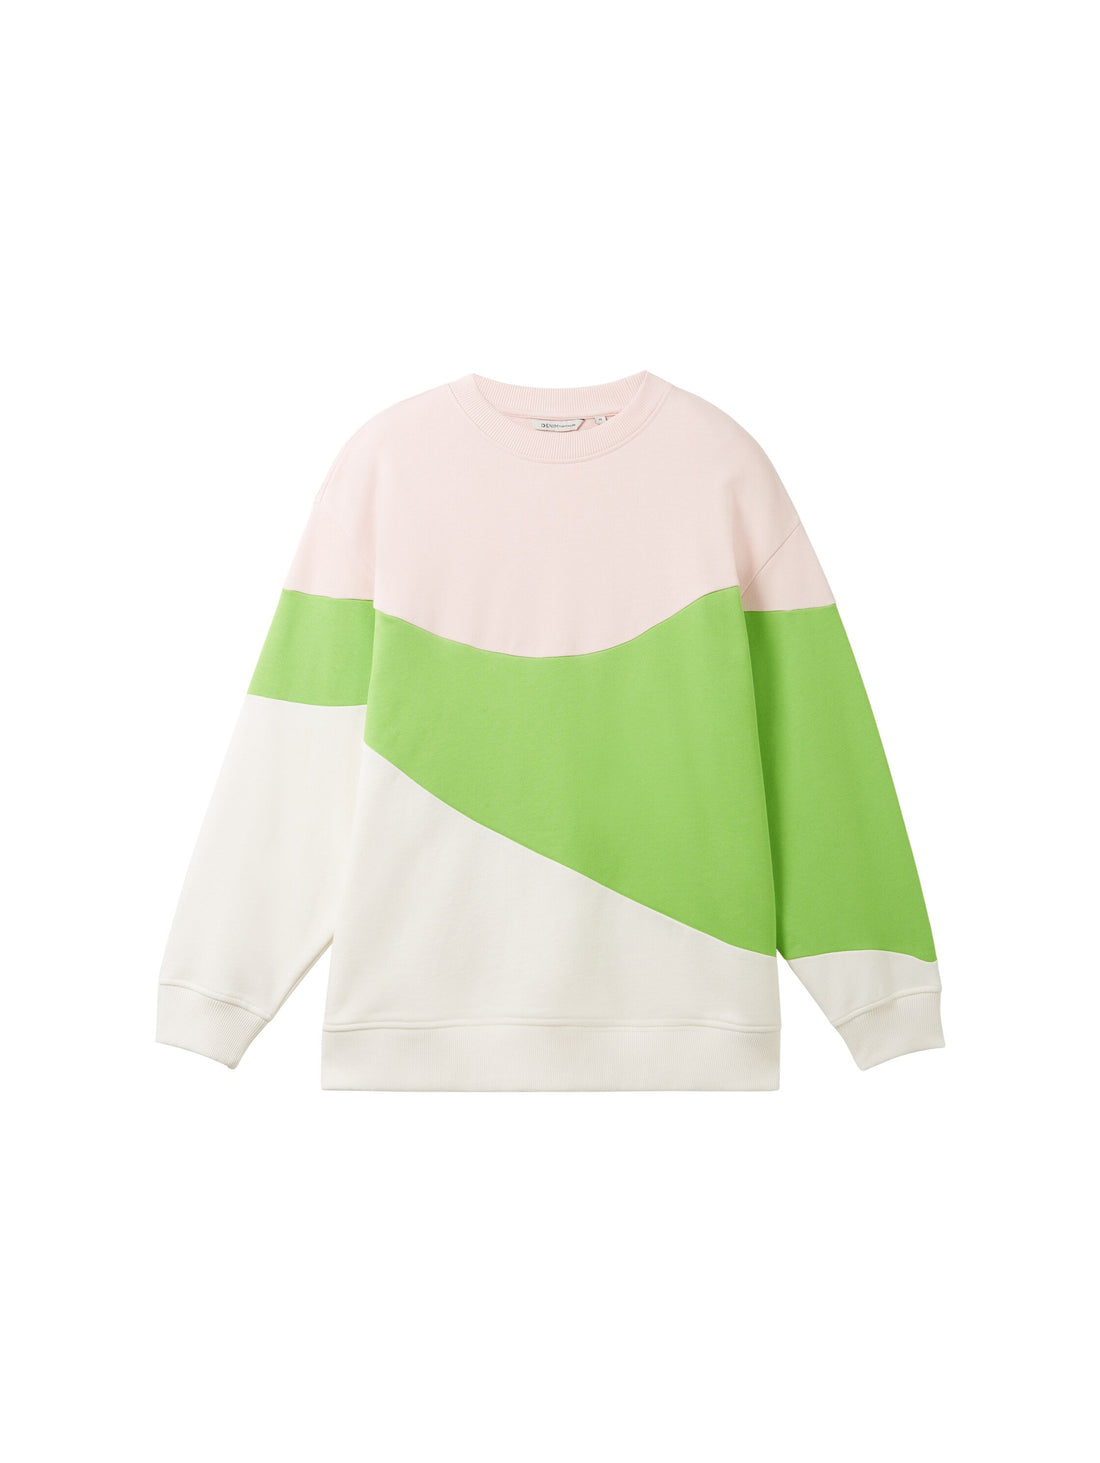 Oversized Sweatshirt With Color Block Design_1038318_32622_01